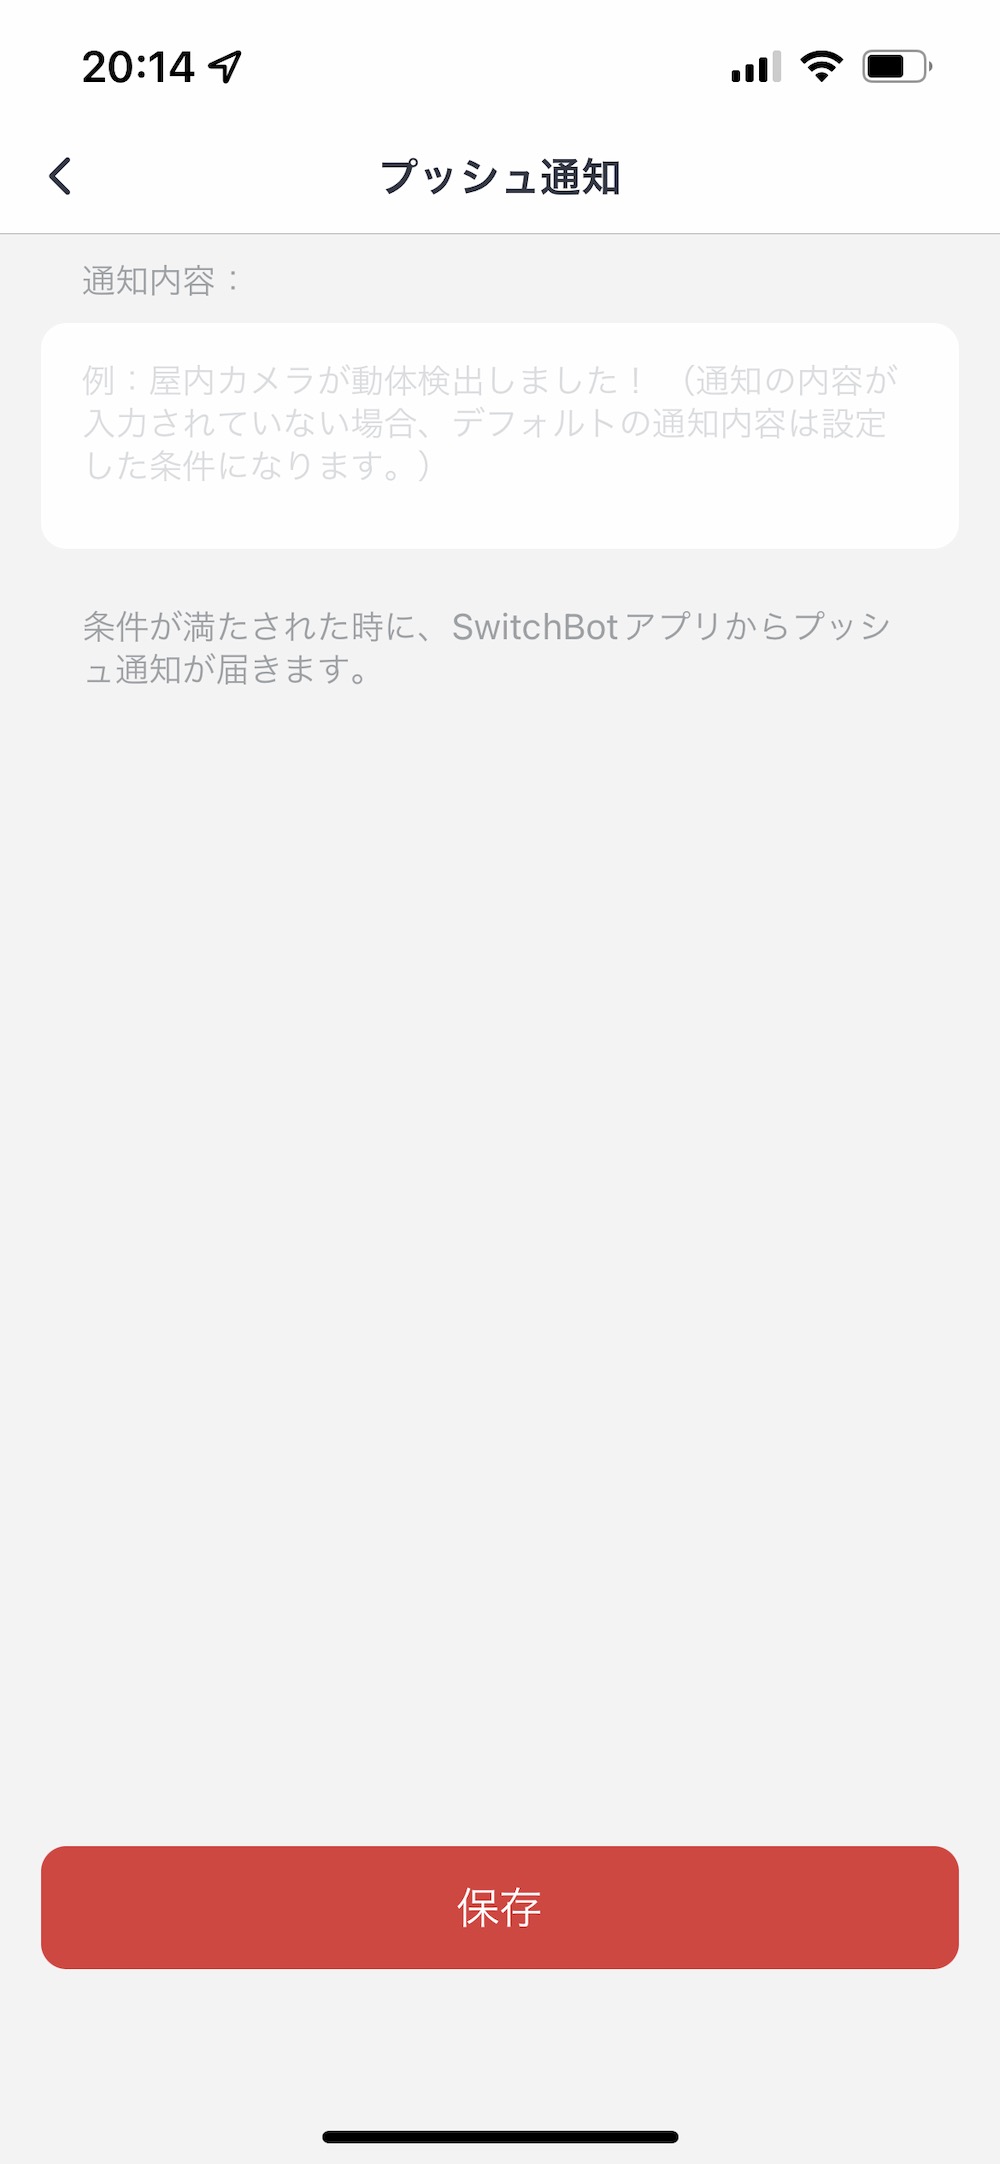 SwitchBot アプリ シーン プッシュ通知内容